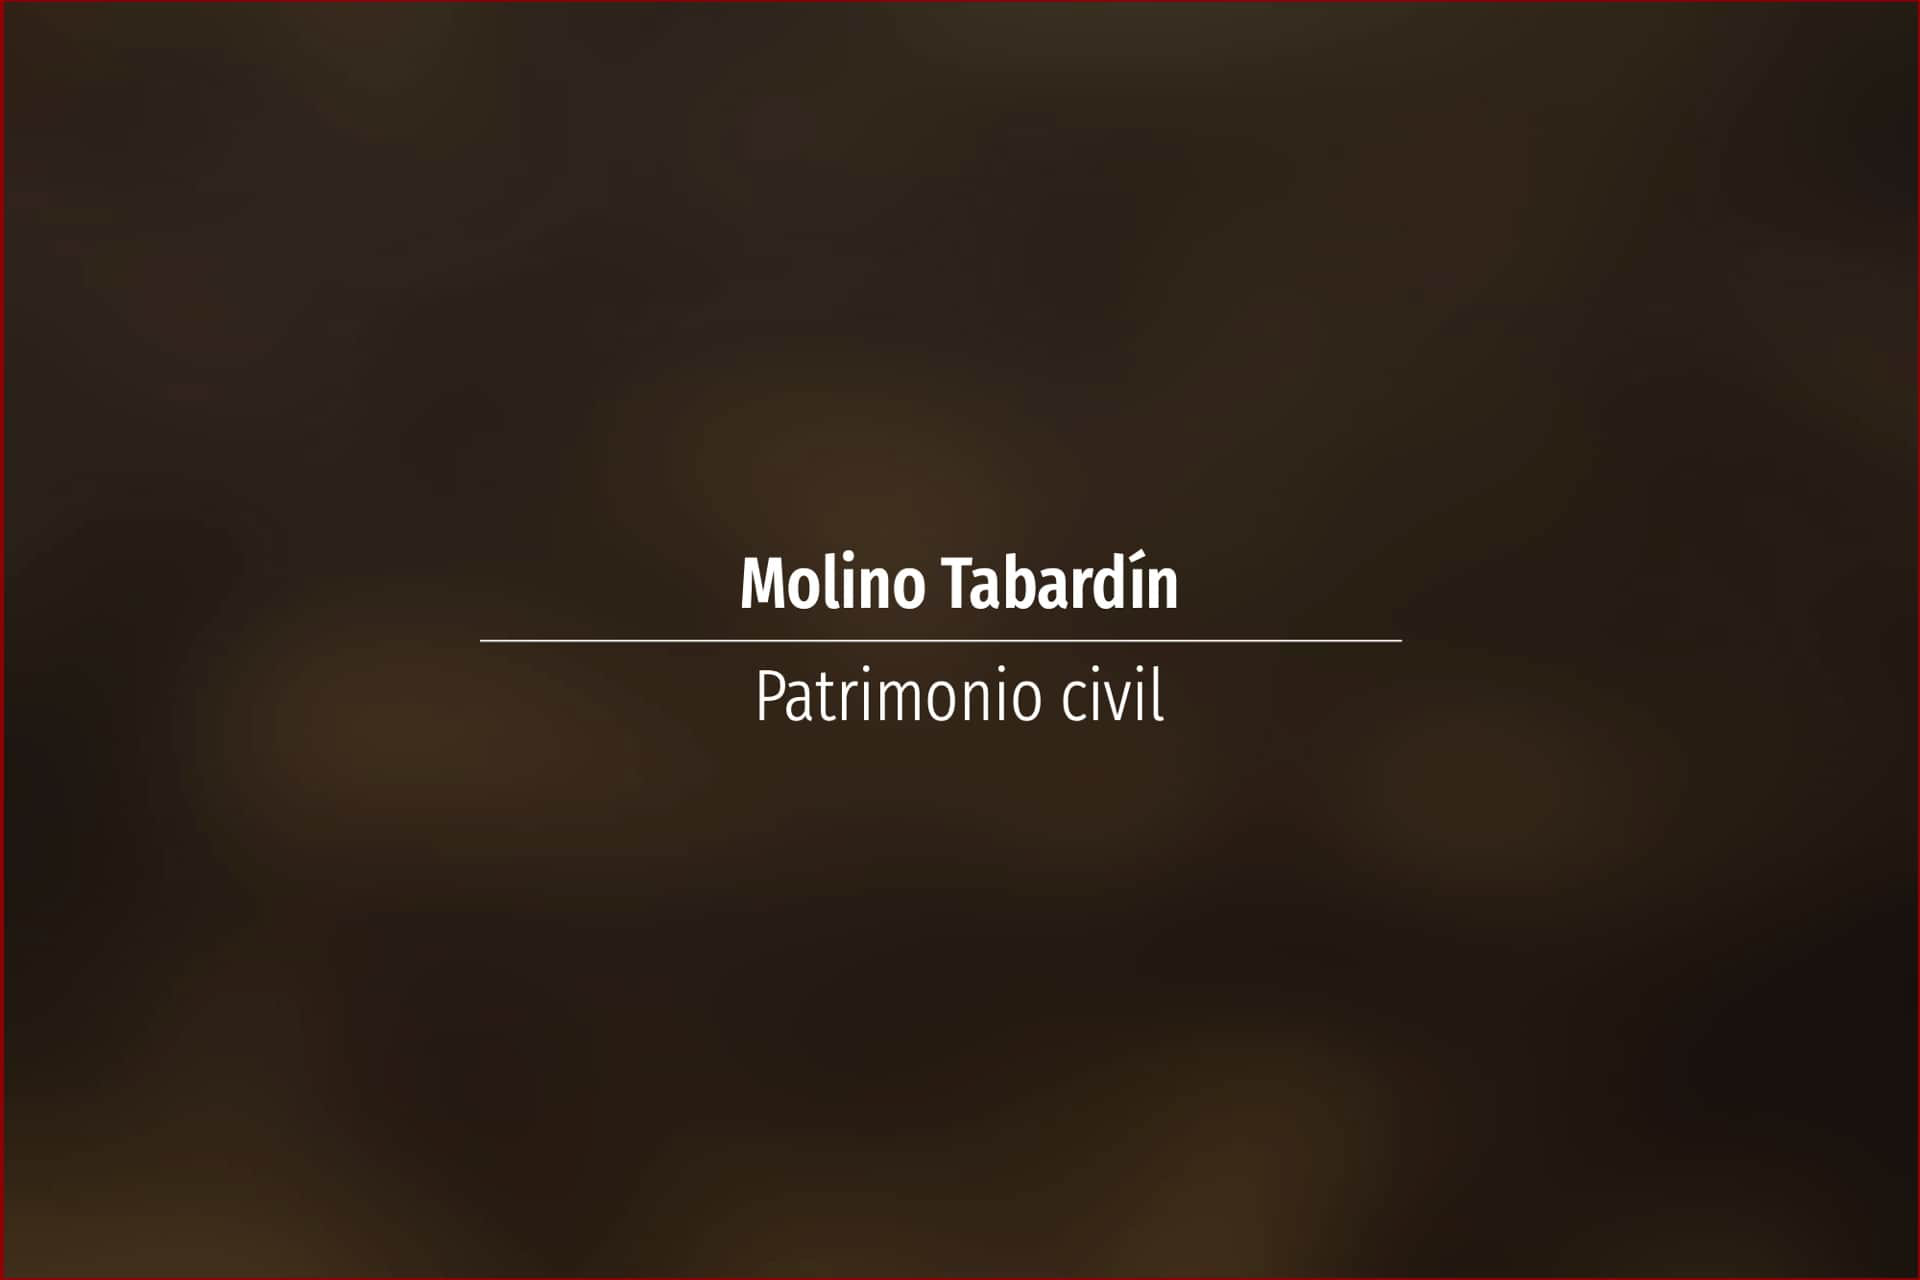 Molino Tabardín